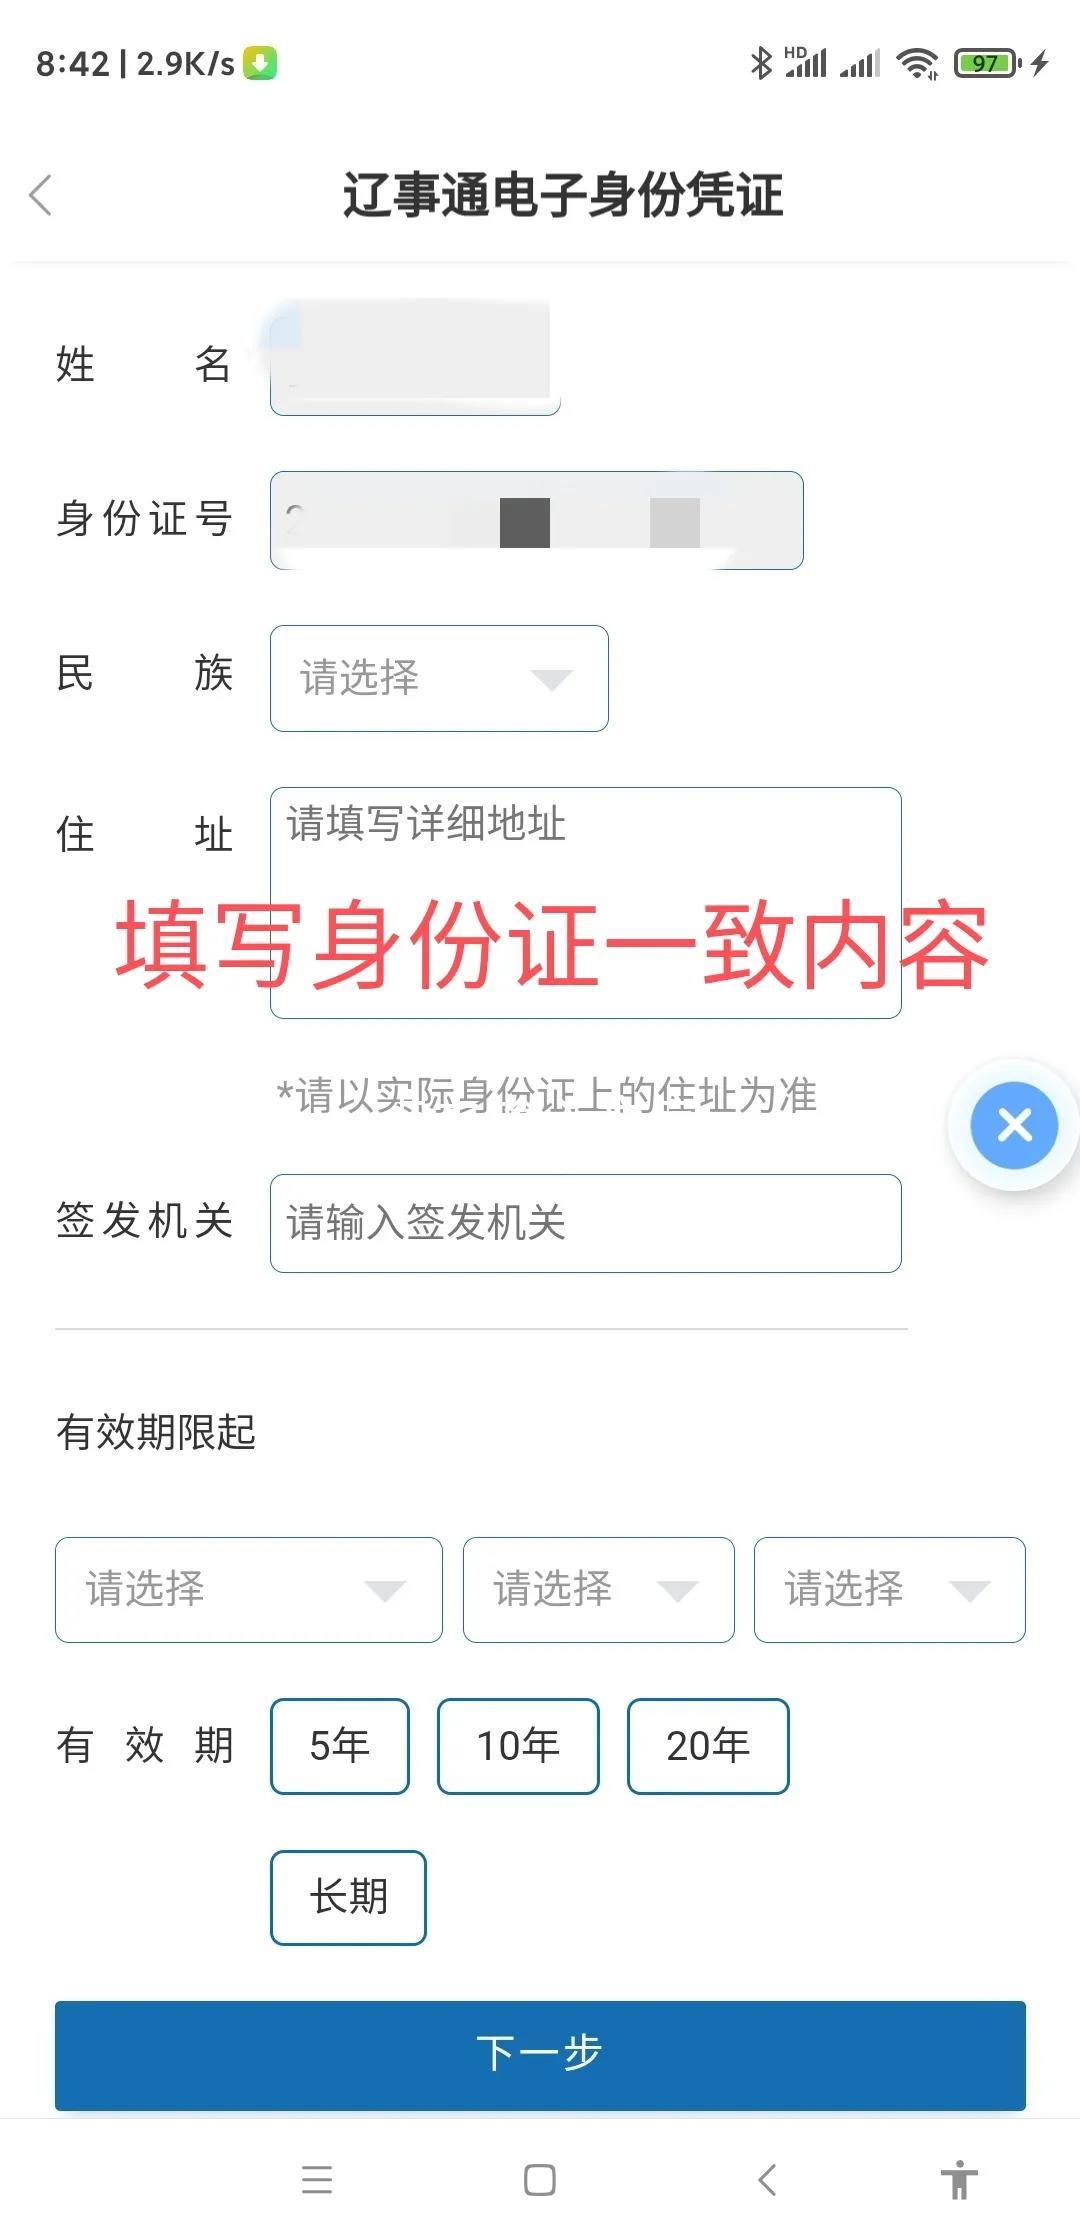 申请电子身份证的步骤图 辽宁省电子身份证是怎么办理